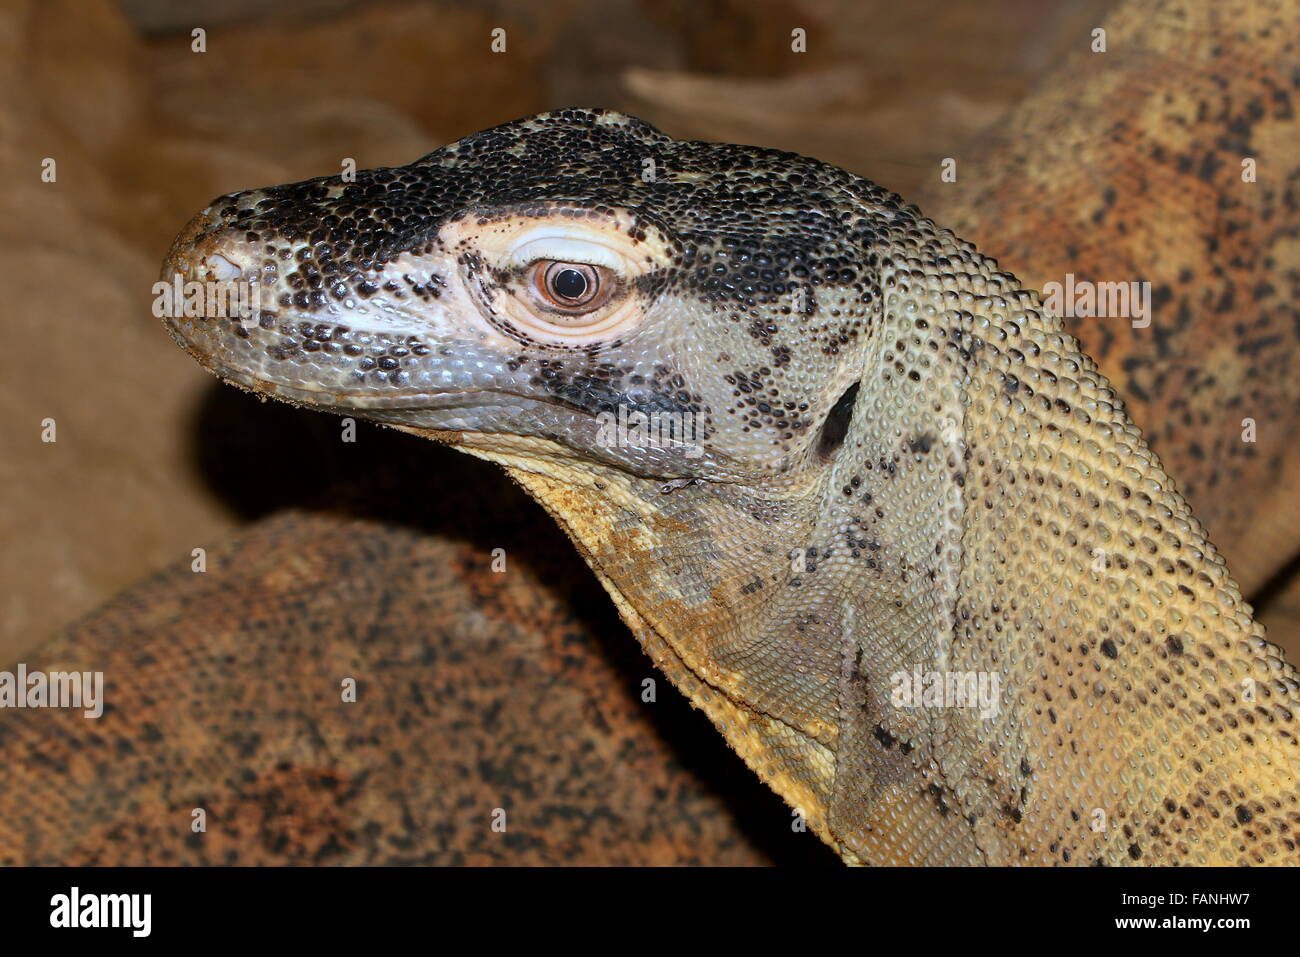 Closeup of the head of a Komodo dragon (Varanus komodoensis) Stock Photo